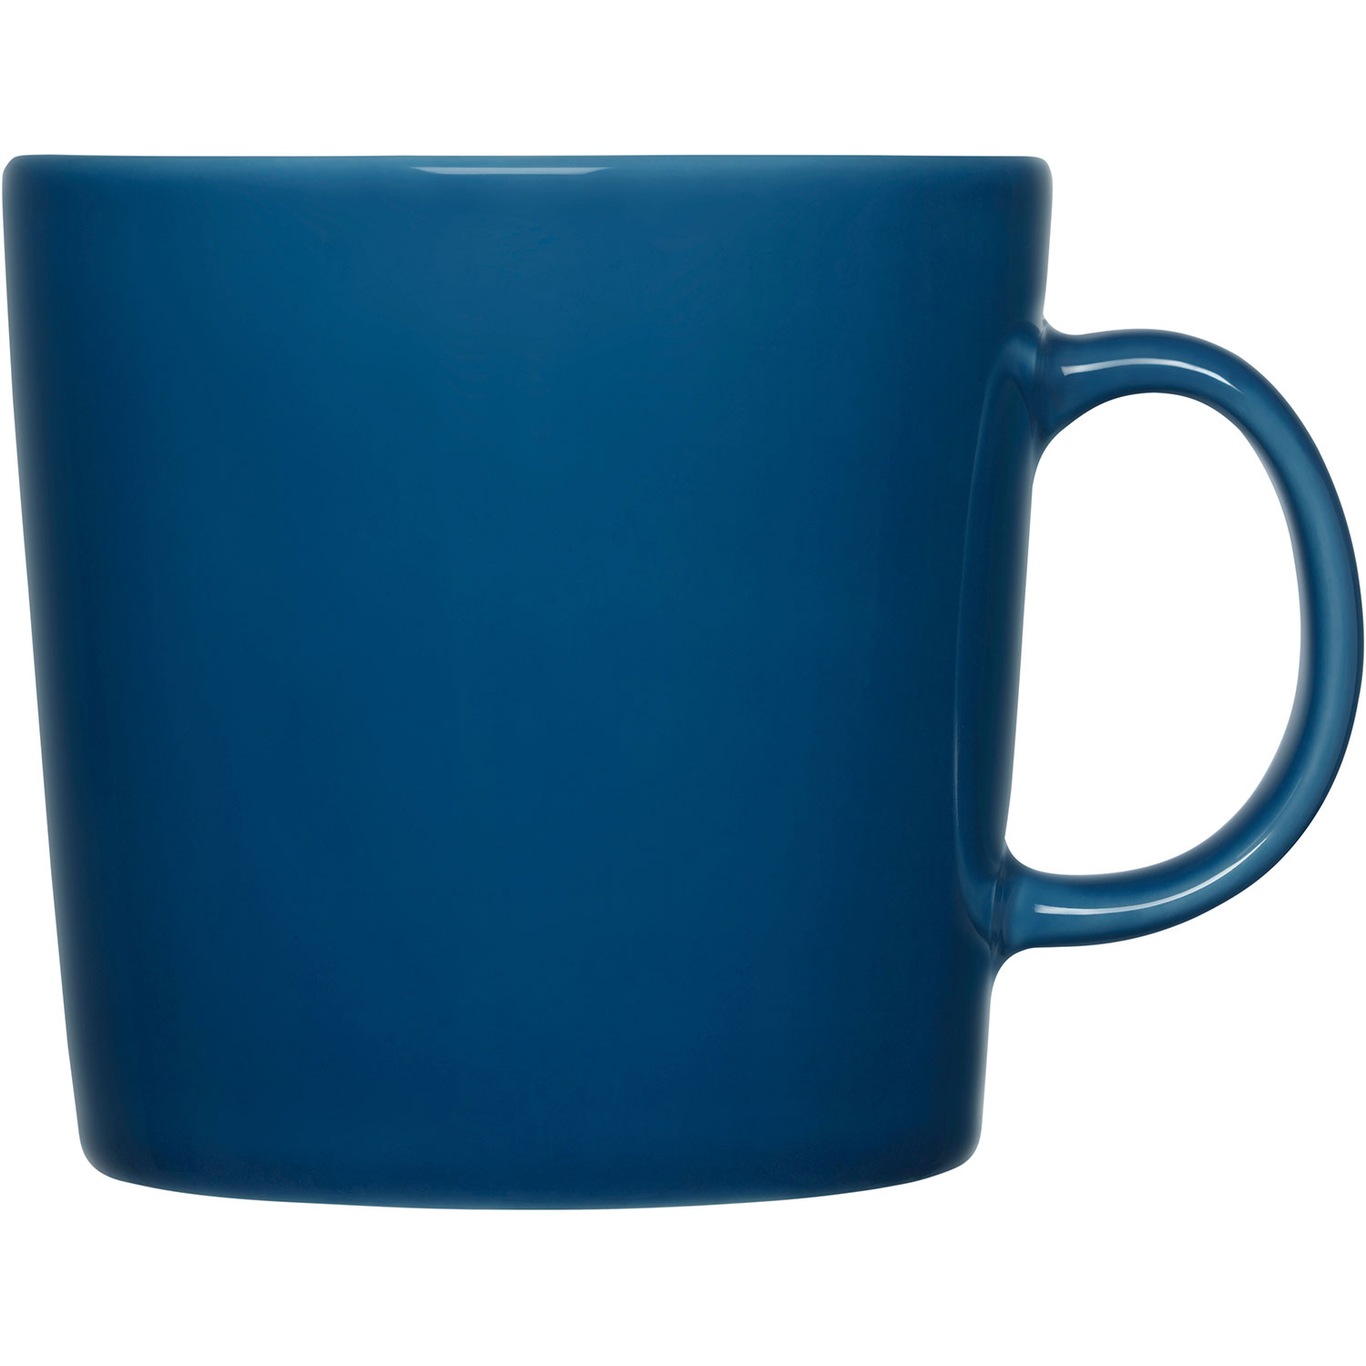 Teema Mug 0.4L Vintage Blue